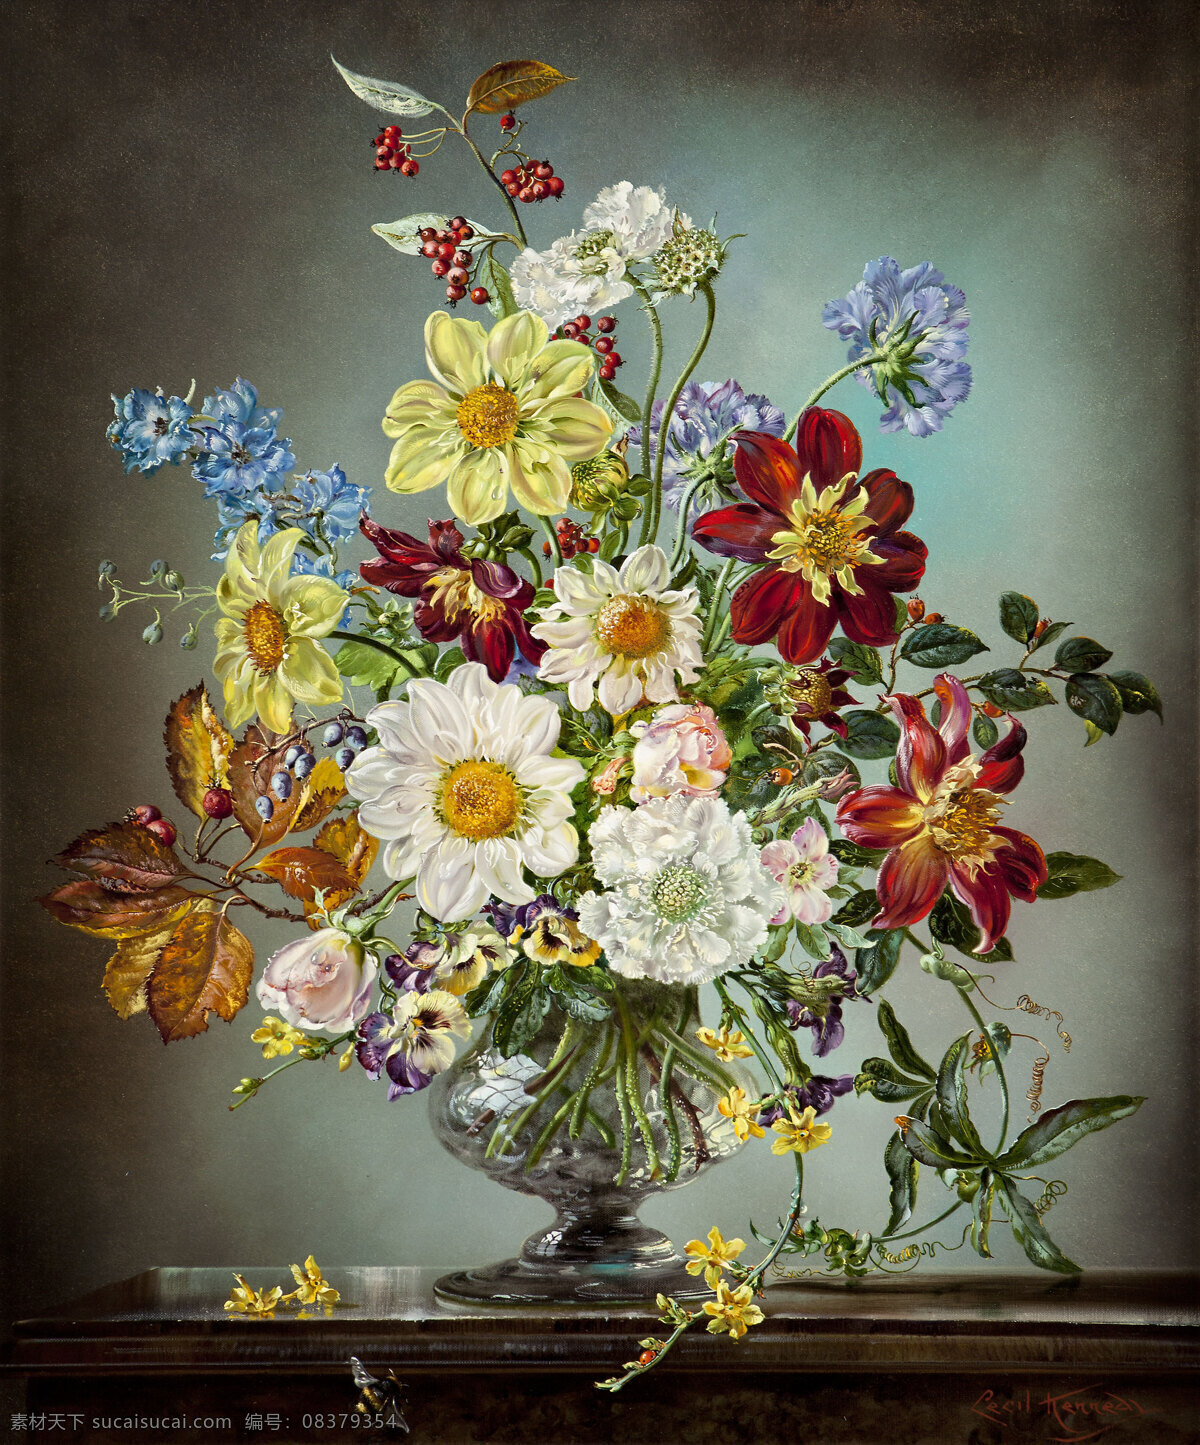 静物鲜花 塞西尔 甘乃迪 作品 英国画家 混搭鲜花 永恒之美 玻璃花瓶 台子 20世纪油画 油画 绘画书法 文化艺术